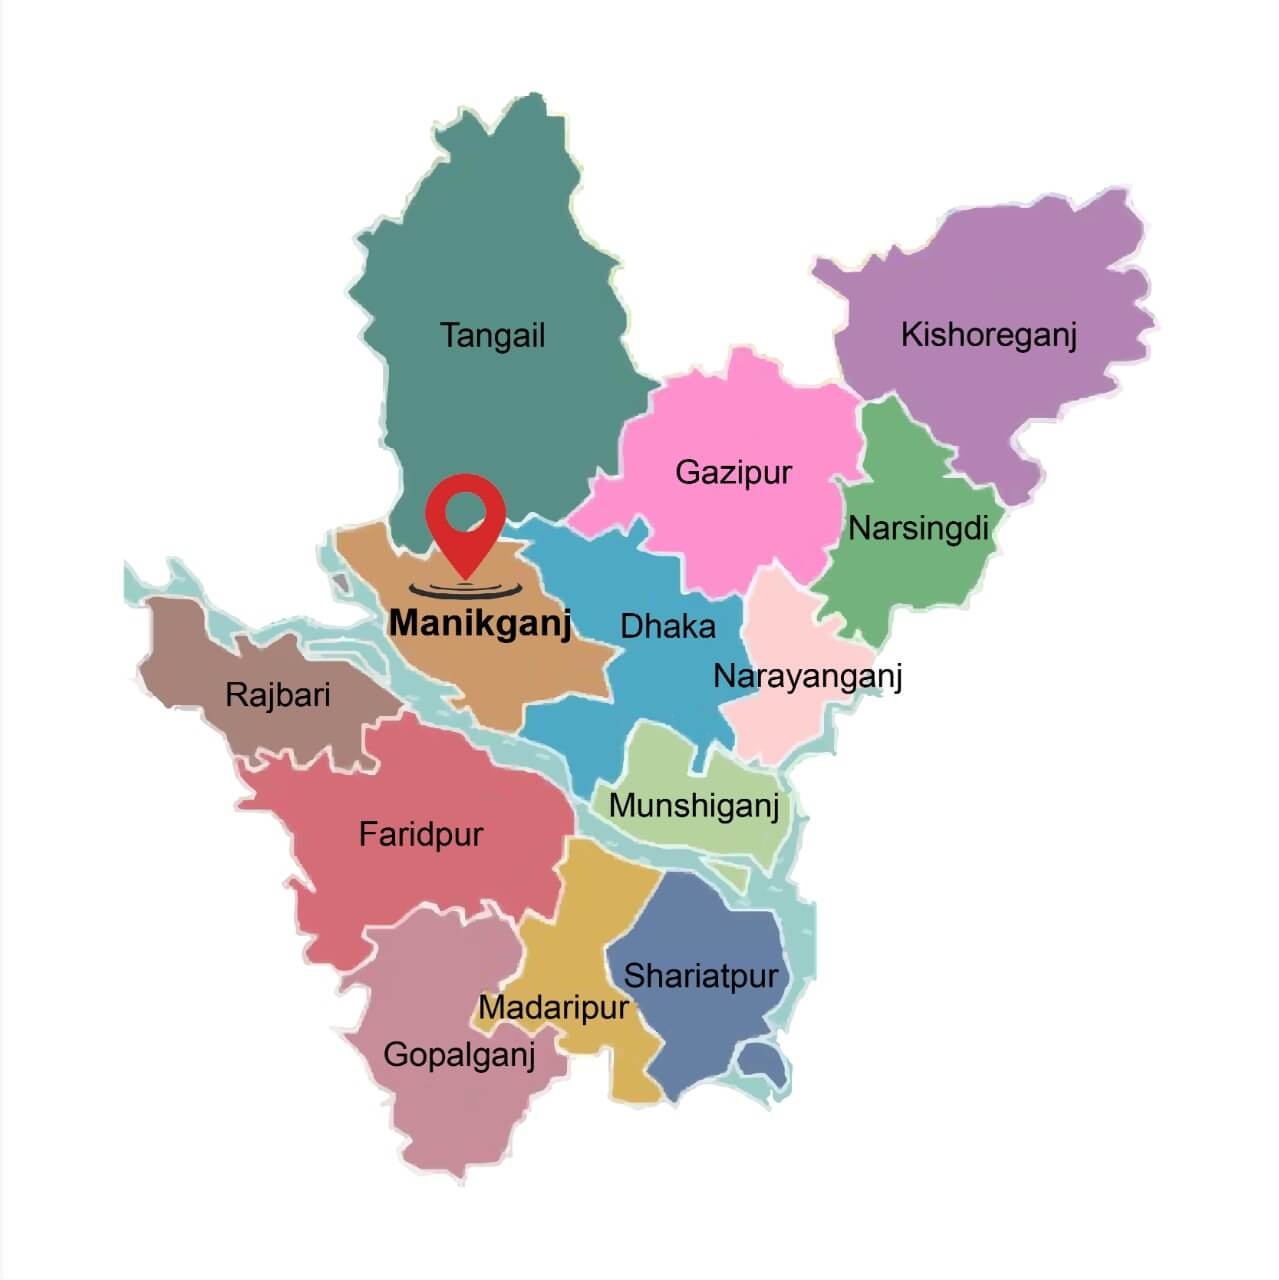 Manikganj